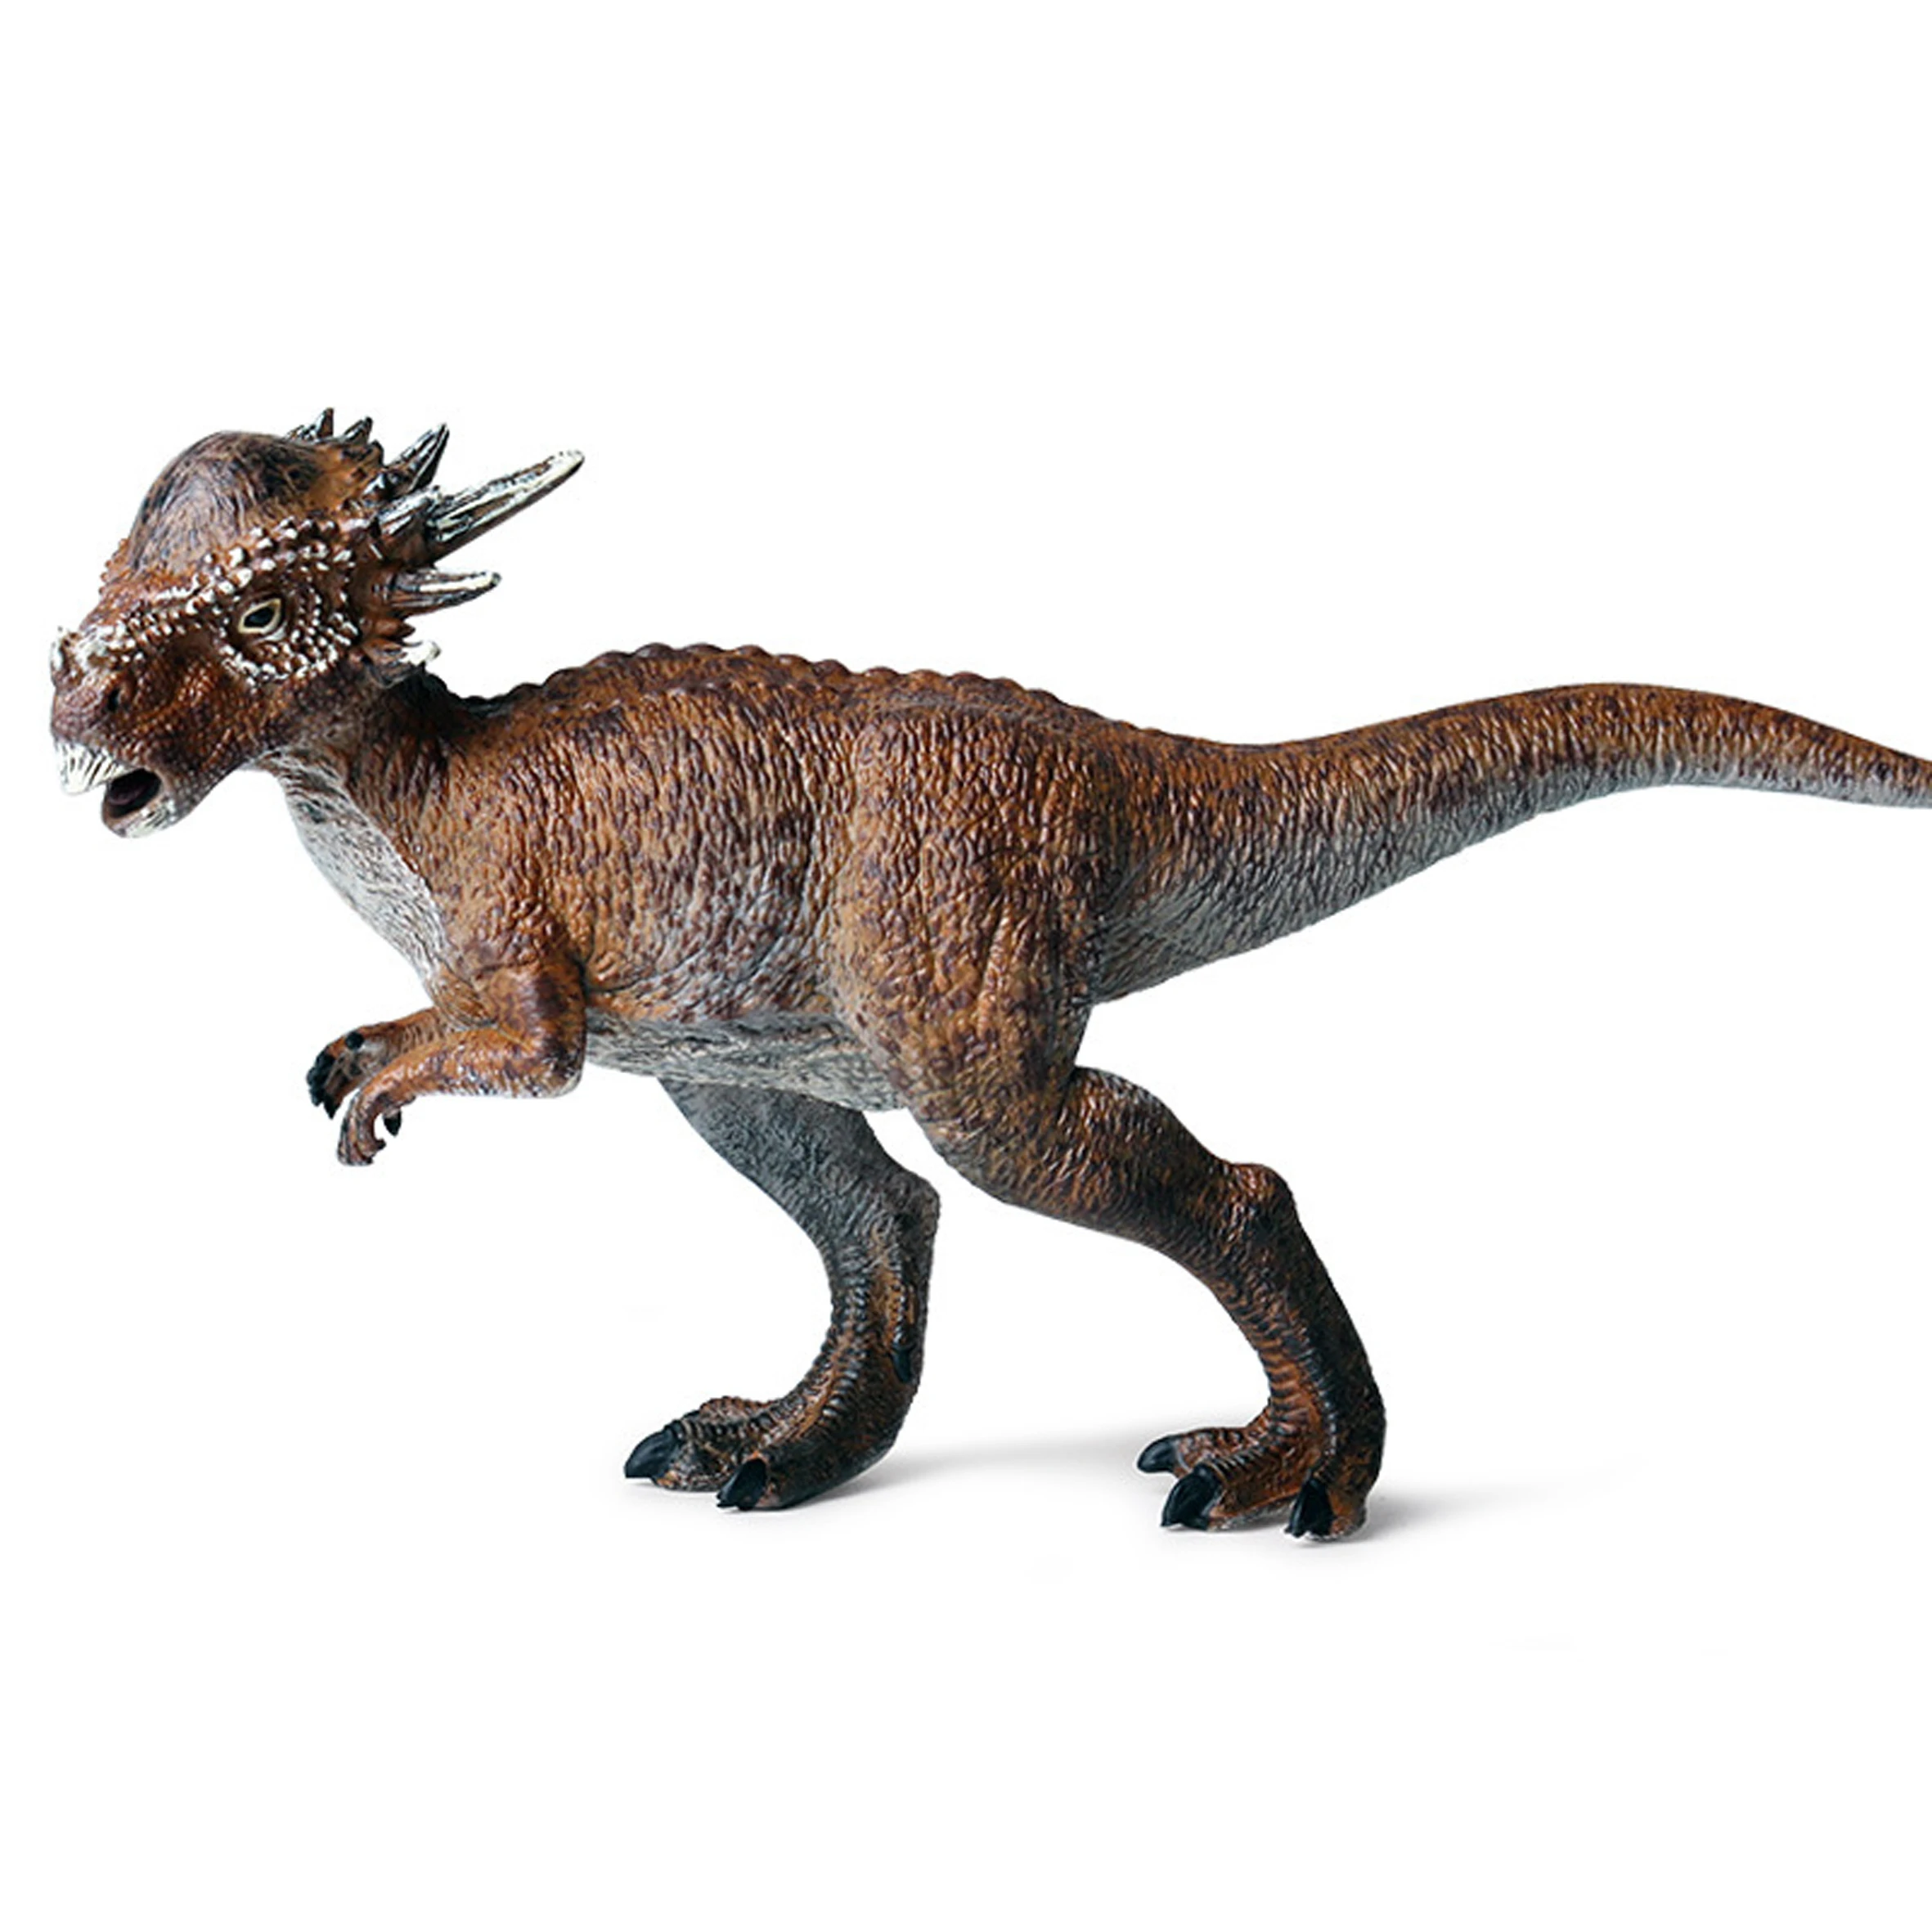 1 шт. шоколадный цвет сплошной Стигимолох модель Динозавр мир Реалистичная фигура Лучшие вечерние игрушки животных для детей на Рождество